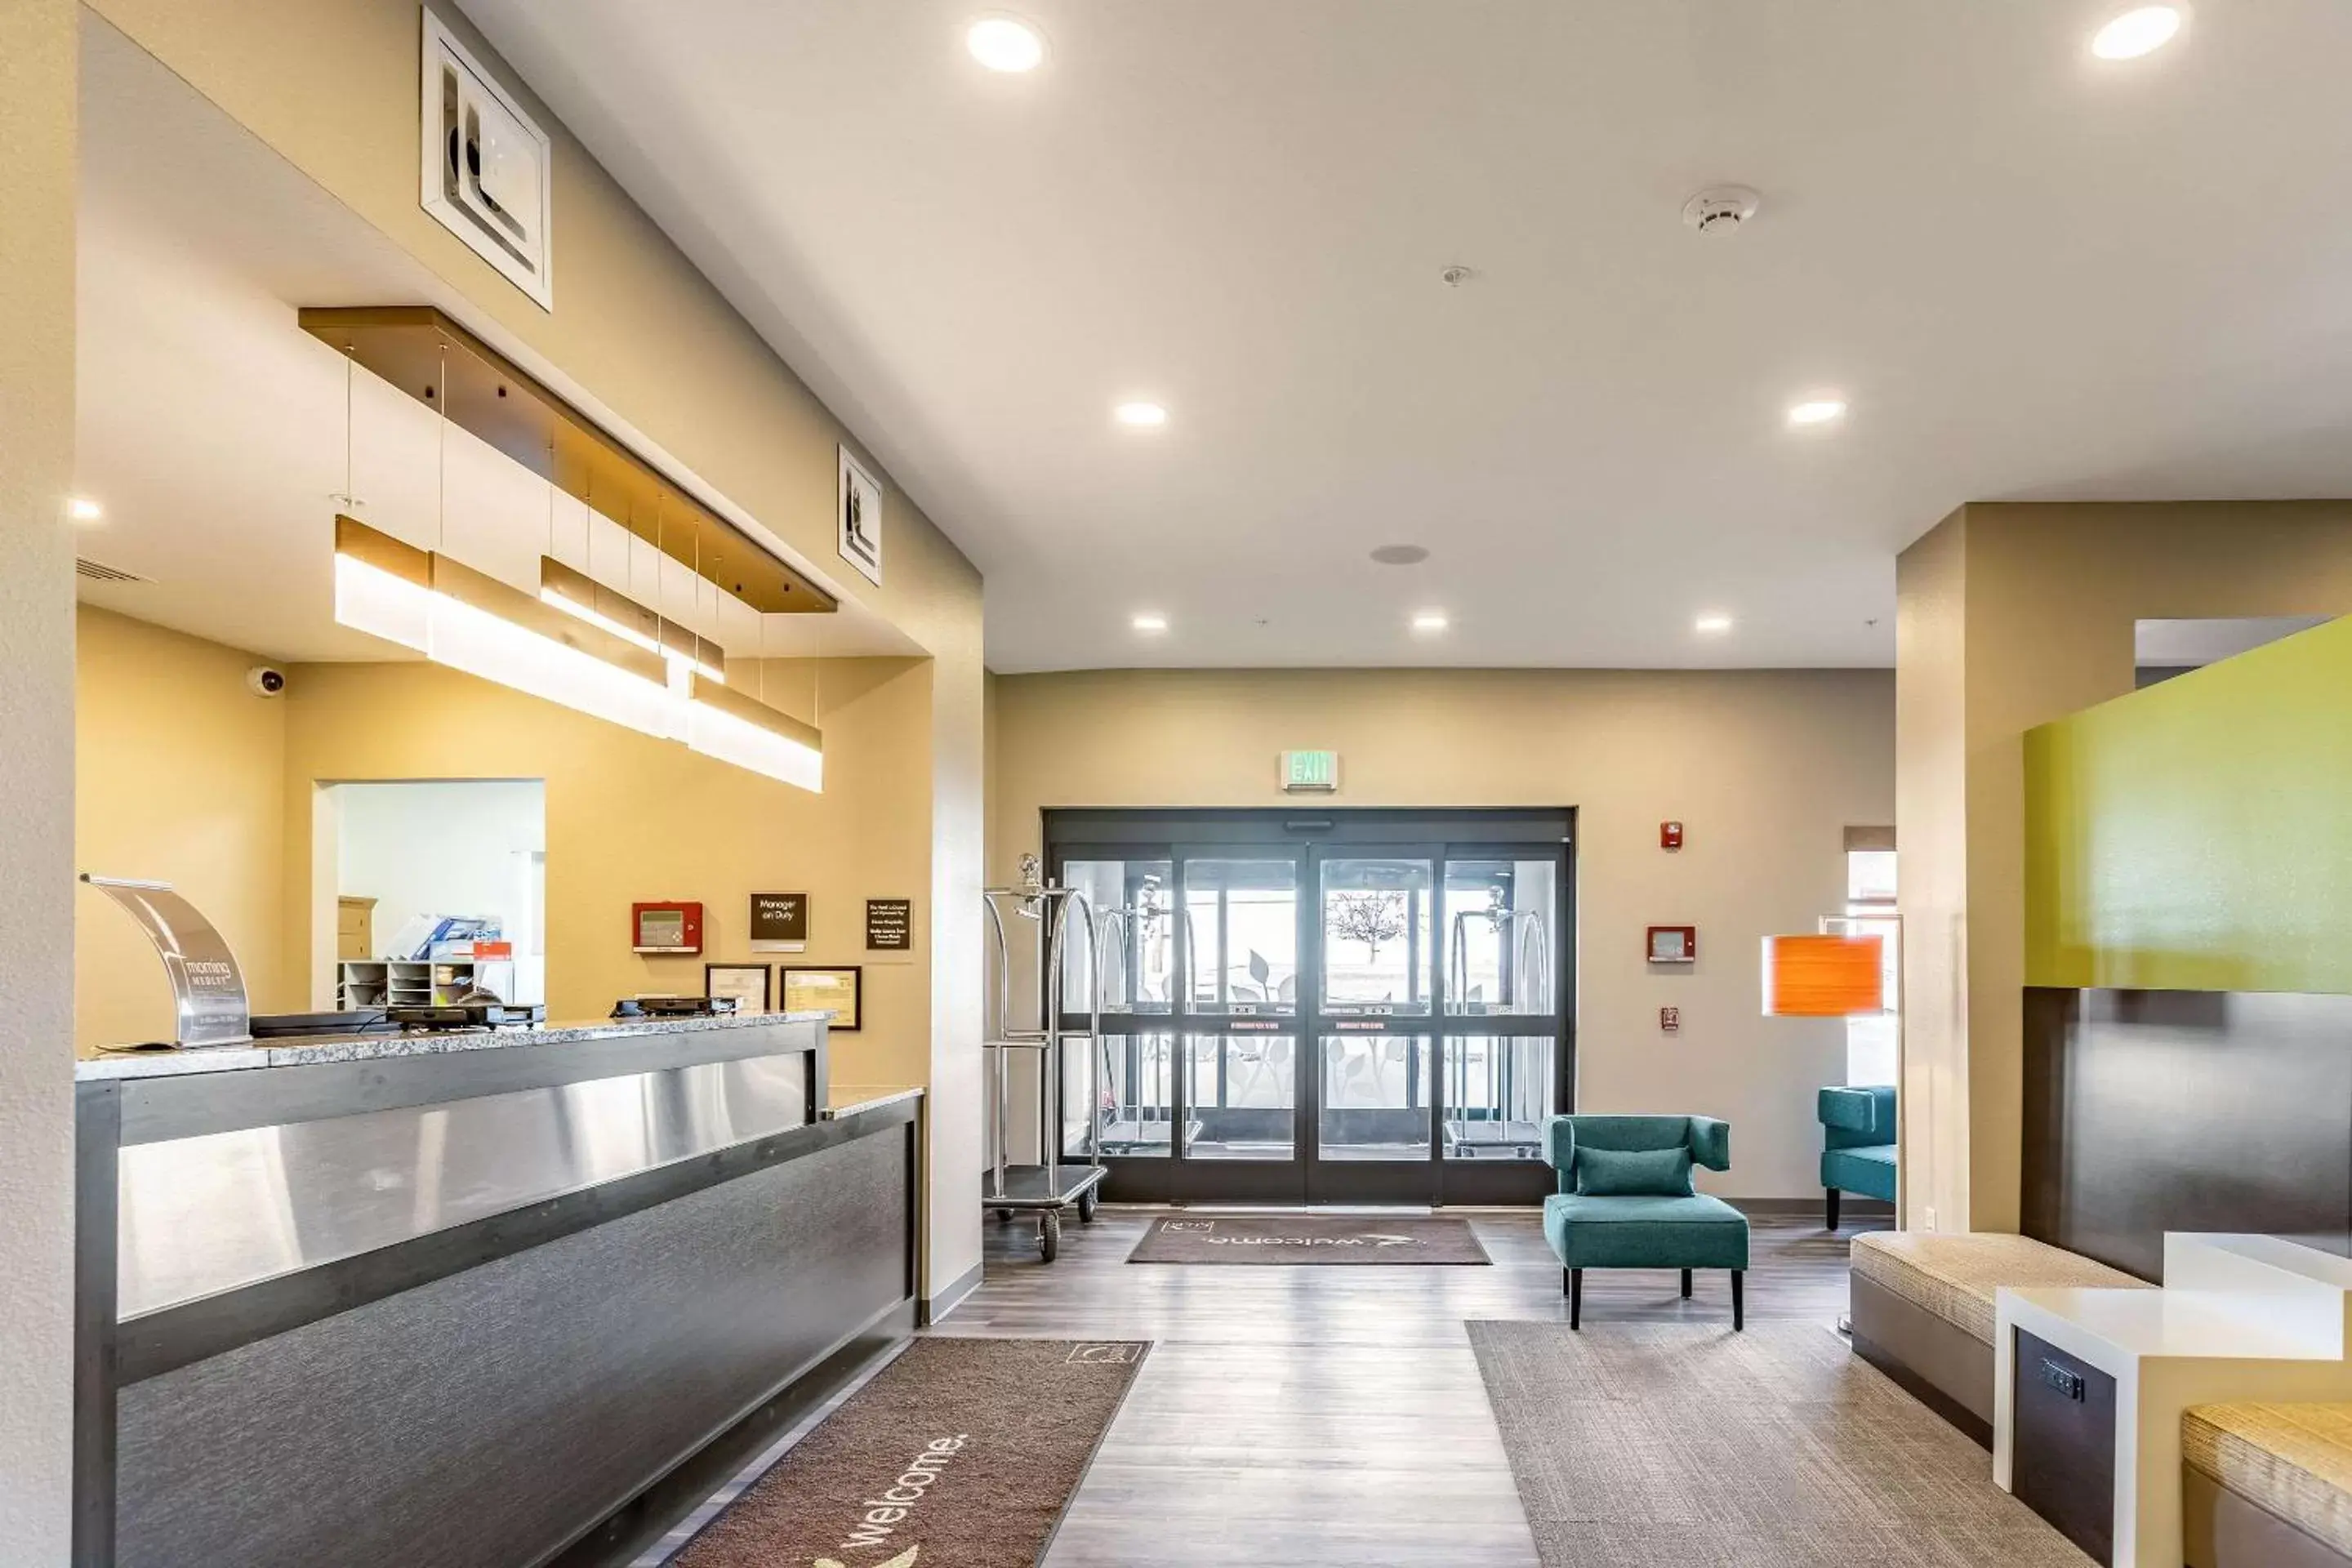 Lobby or reception, Lobby/Reception in Sleep Inn & Suites Mt. Hope near Auction & Event Center